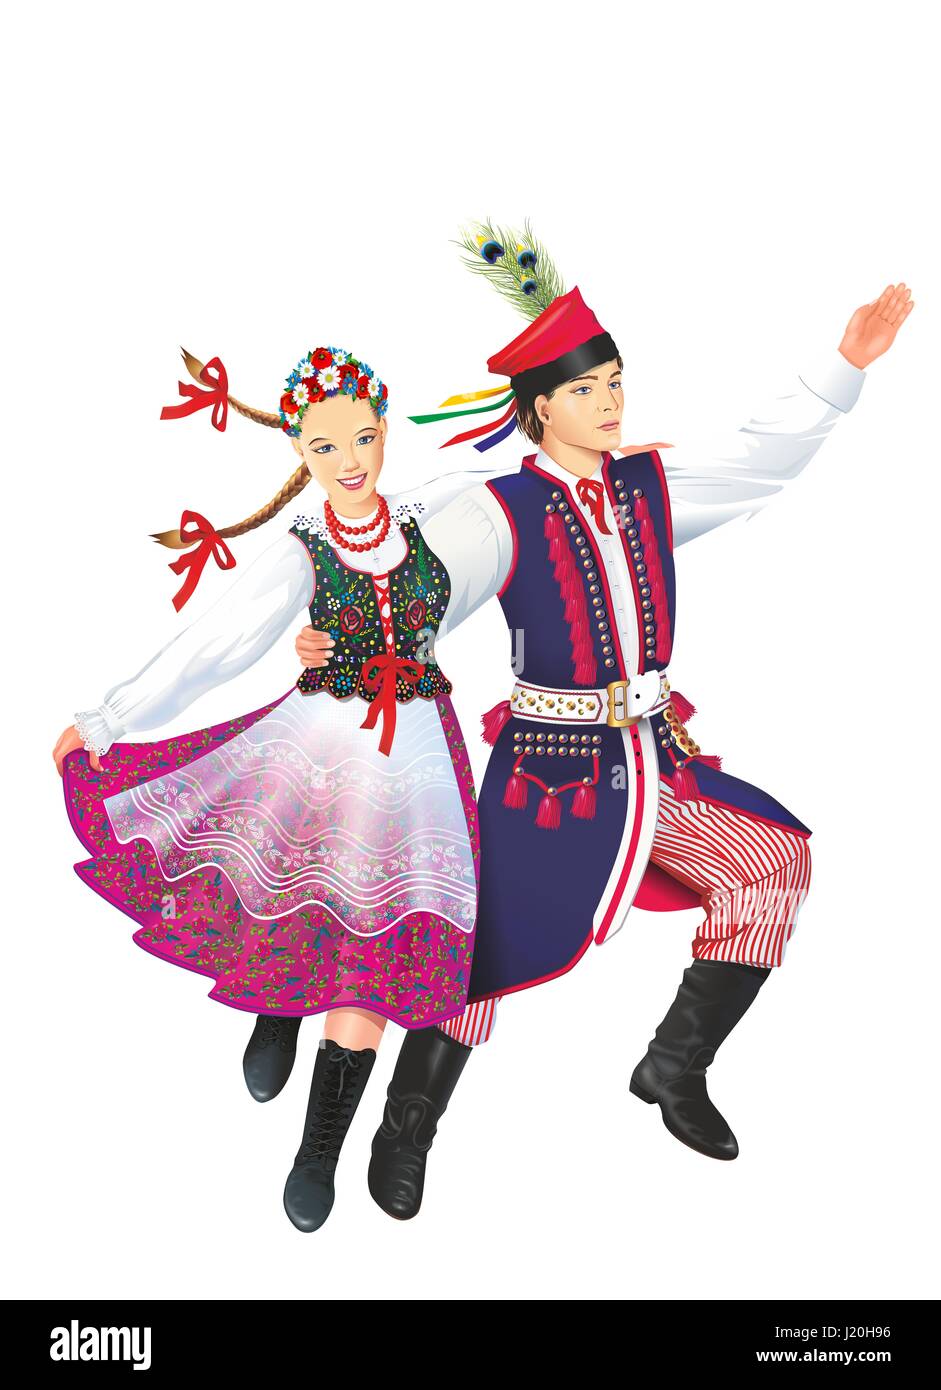 Dancing Krakowiacy Isolated on White Illustration. Subethnic Group of the Polish Nation. Folk Dancers. Stock Photo